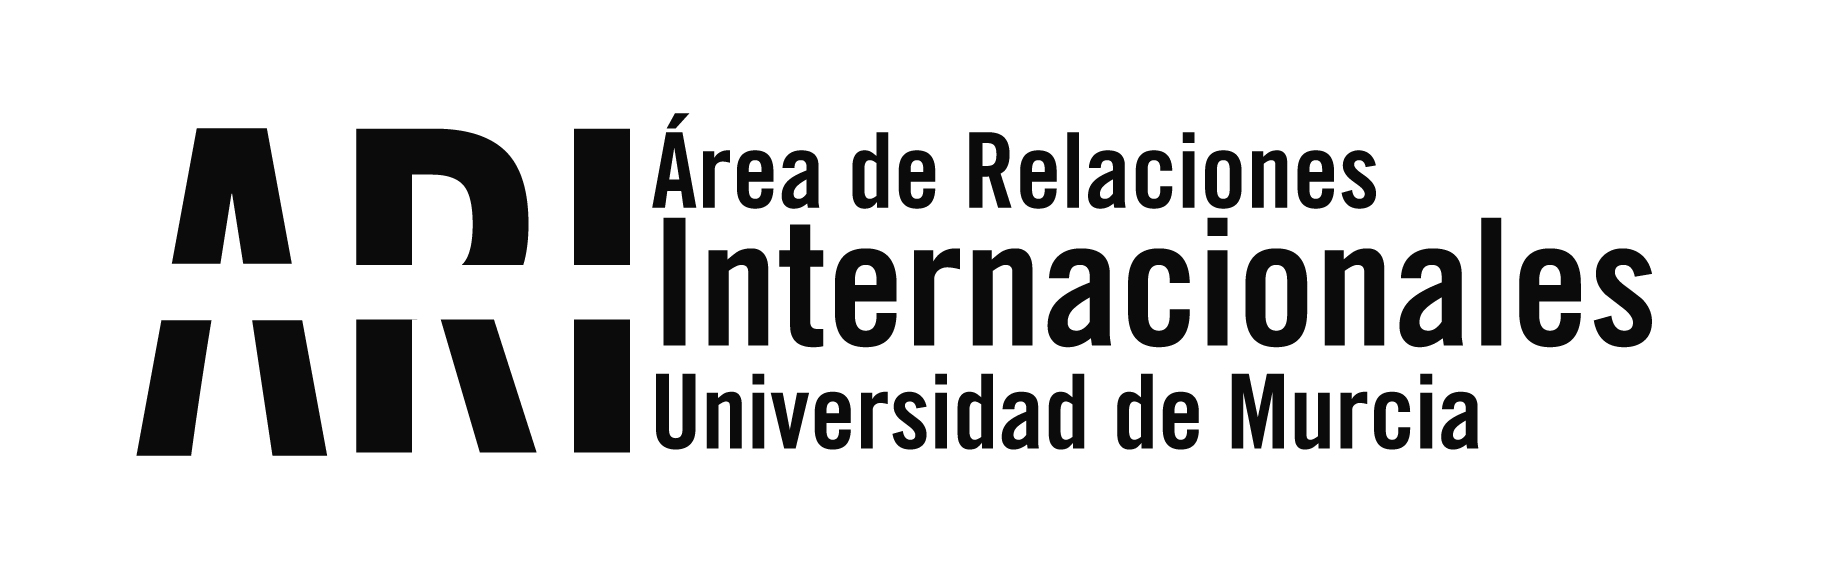 Becas FULBRIGHT para lectores de español en EEUU - Curso 2020​-21 - Área de Relaciones Internacionales